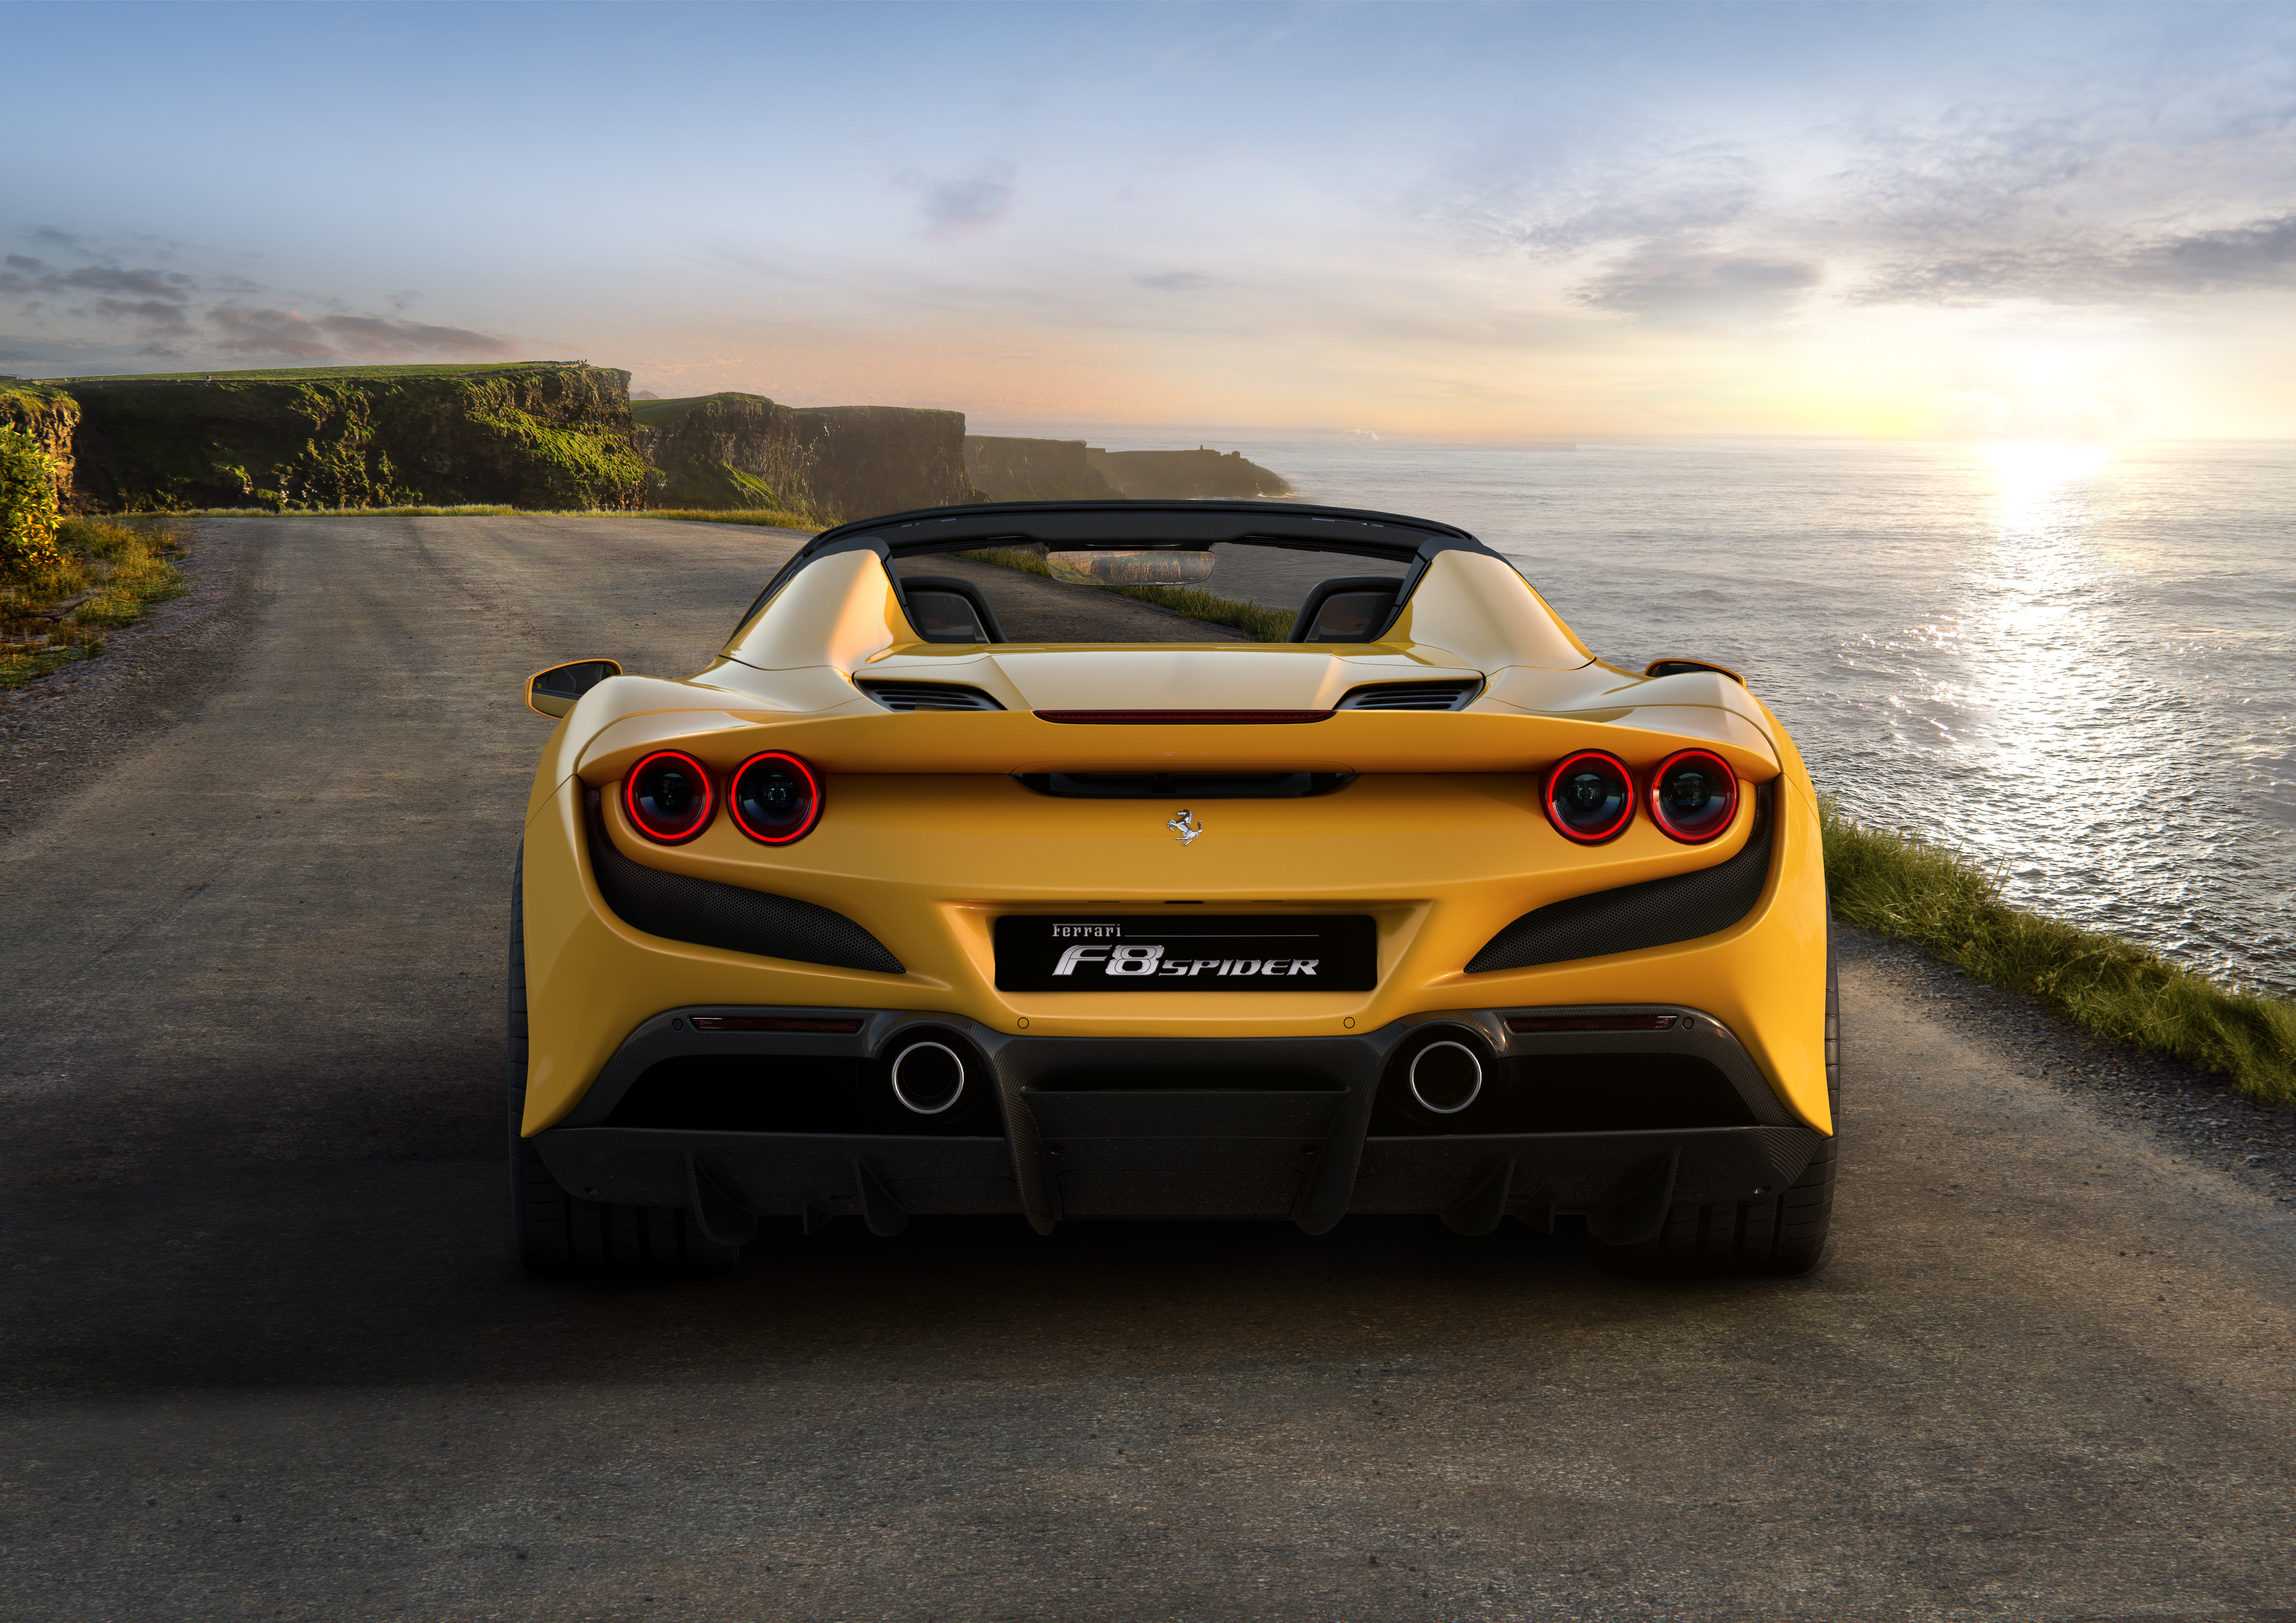 Фото бесплатно машины, автомобили 2019 года, Ferrari, море, закат